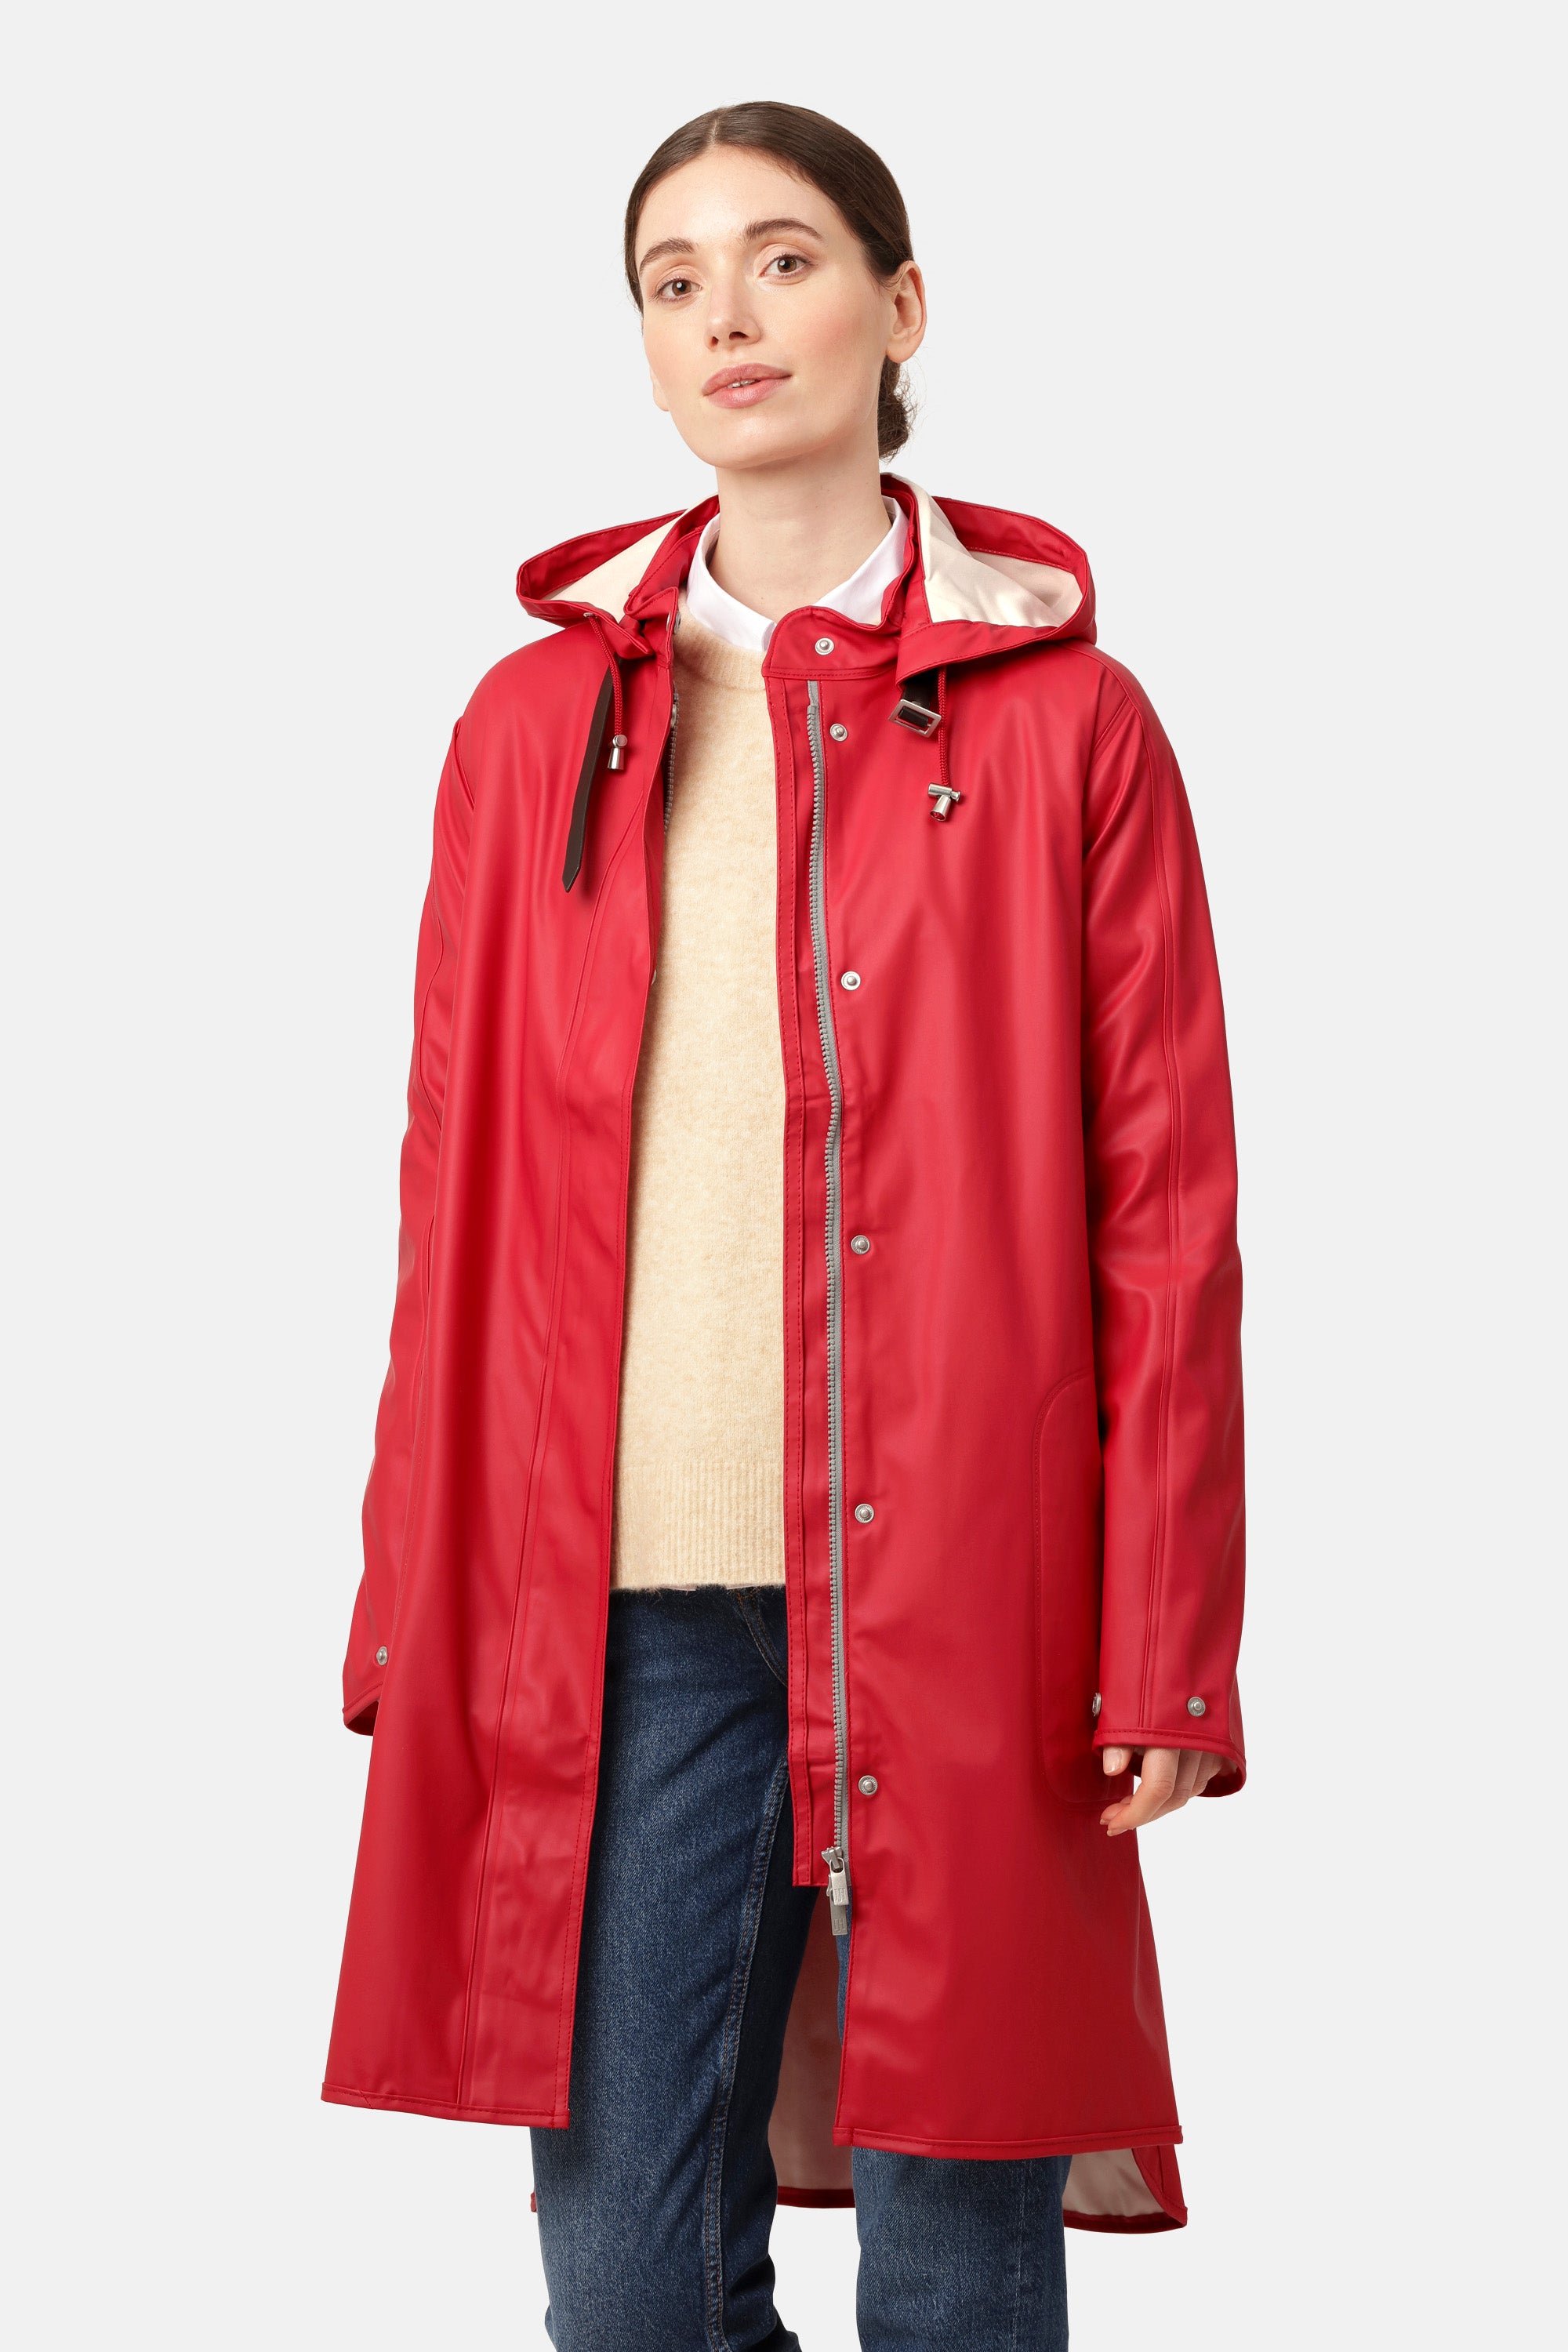 Stylish and waterproof Rain Jackets & Coats - ILSE JACOBSEN